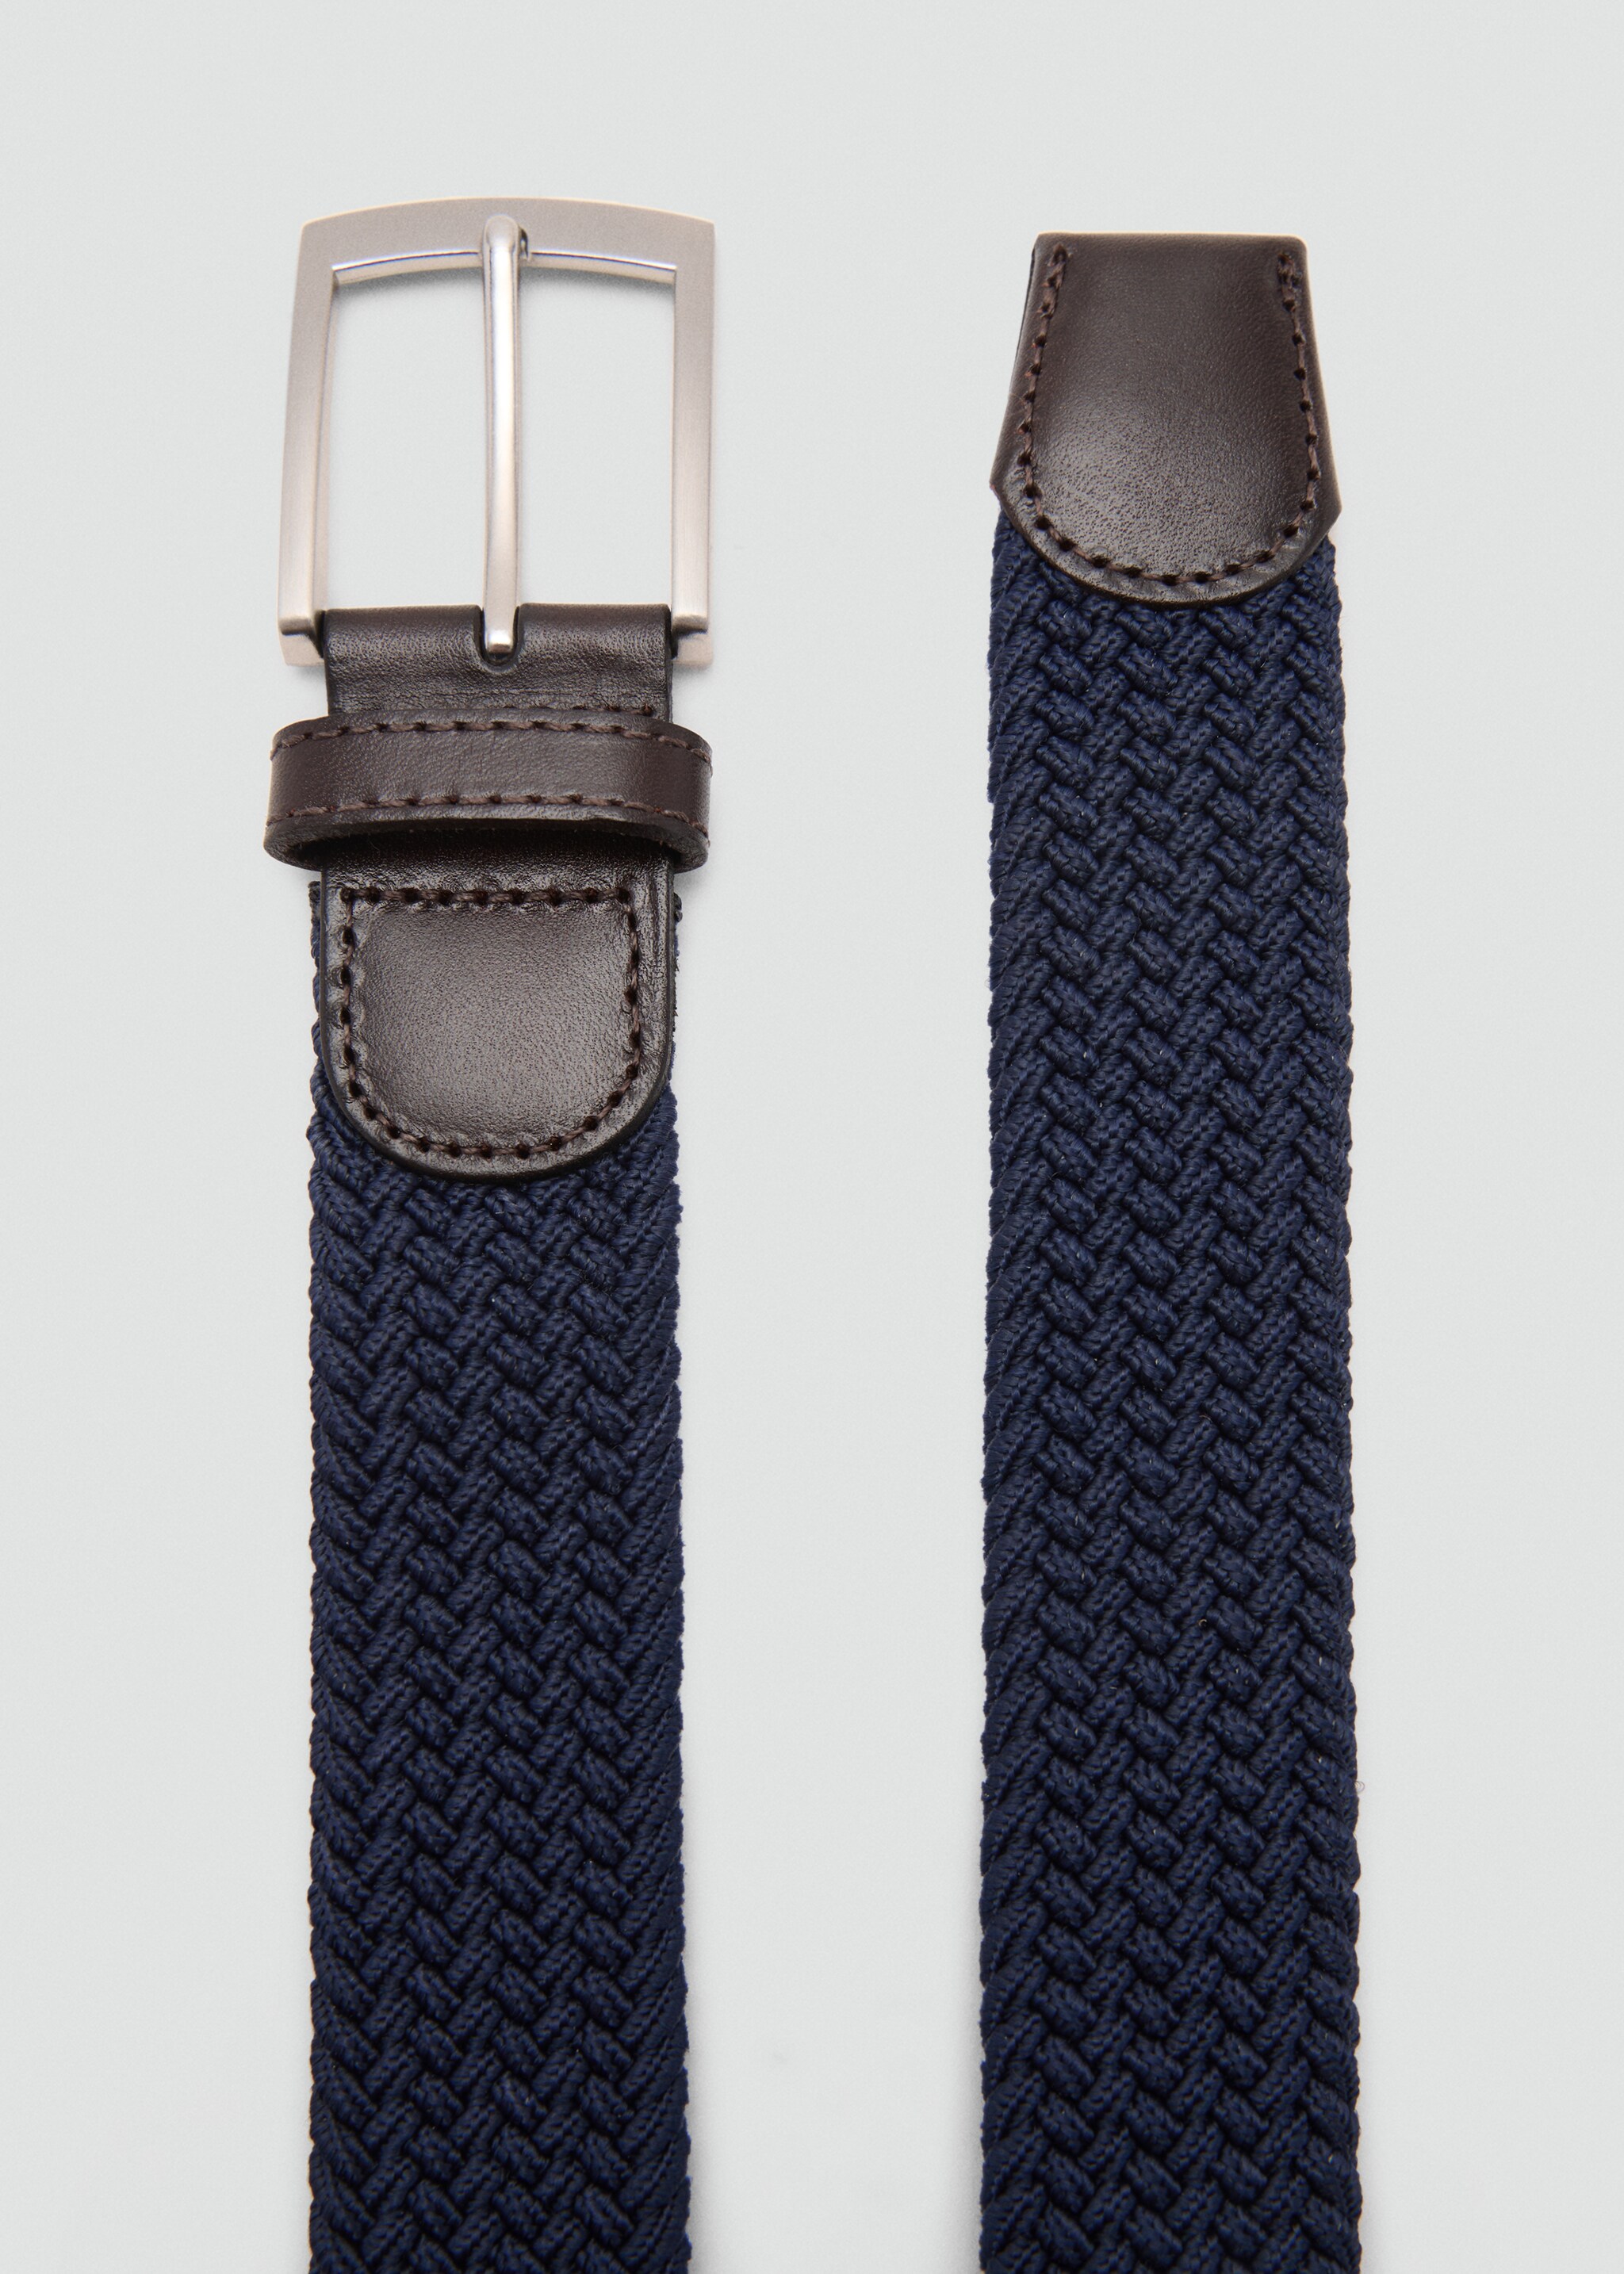 Braided elastic belt - Medium plane